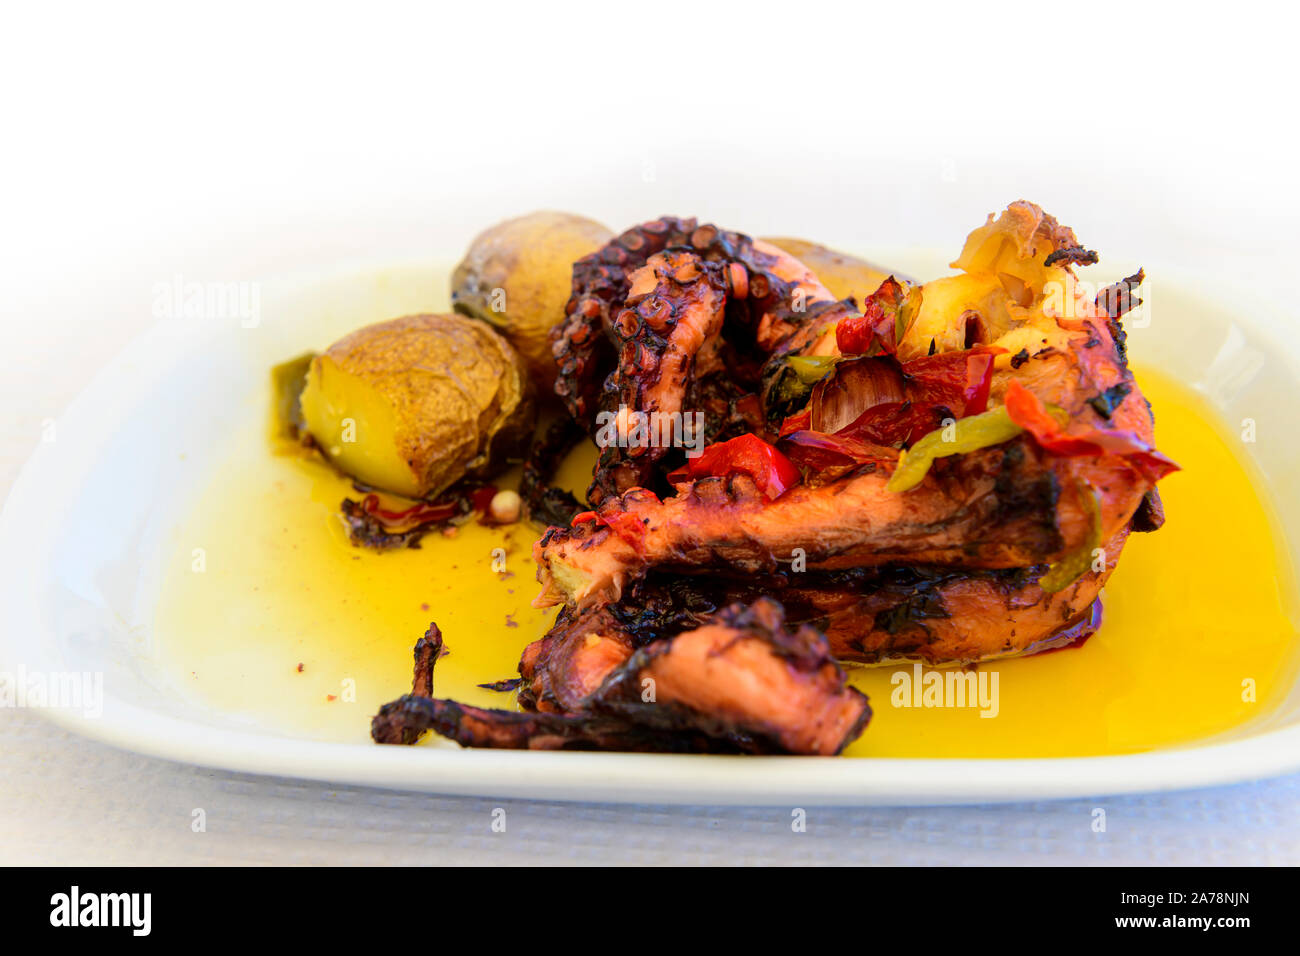 Menú pulpo cena almuerzo cocinado en aceite de oliva con patatas. Algarve Portugal Foto de stock